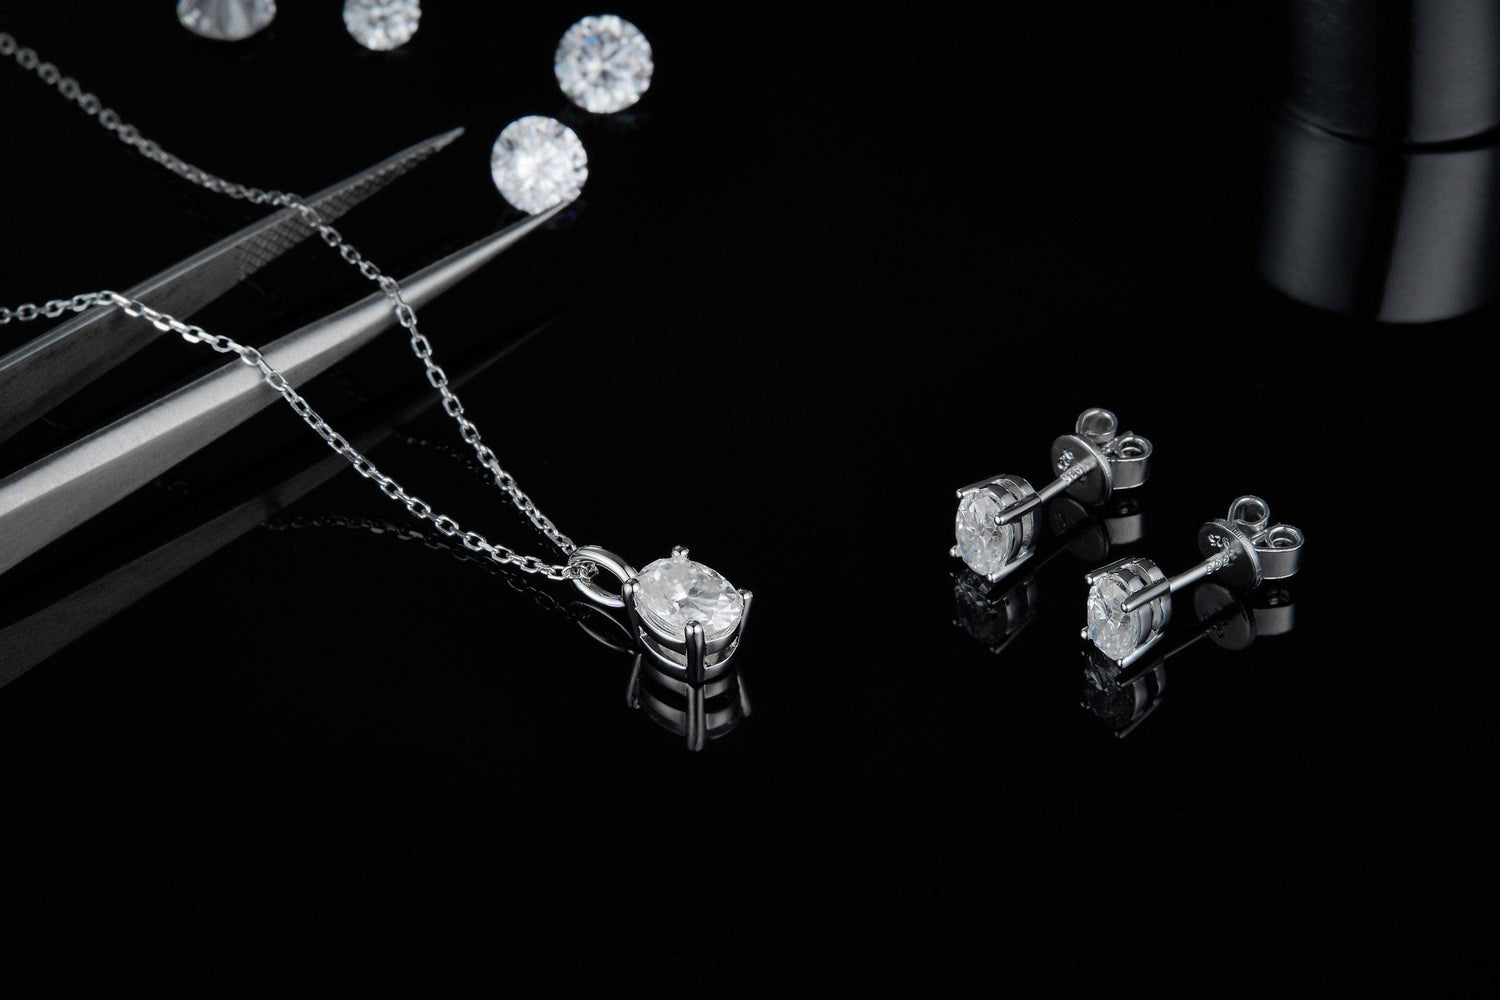 Oval Brilliant Moissanite Necklace Earrings Sets For Women Wedding-Black Diamonds New York